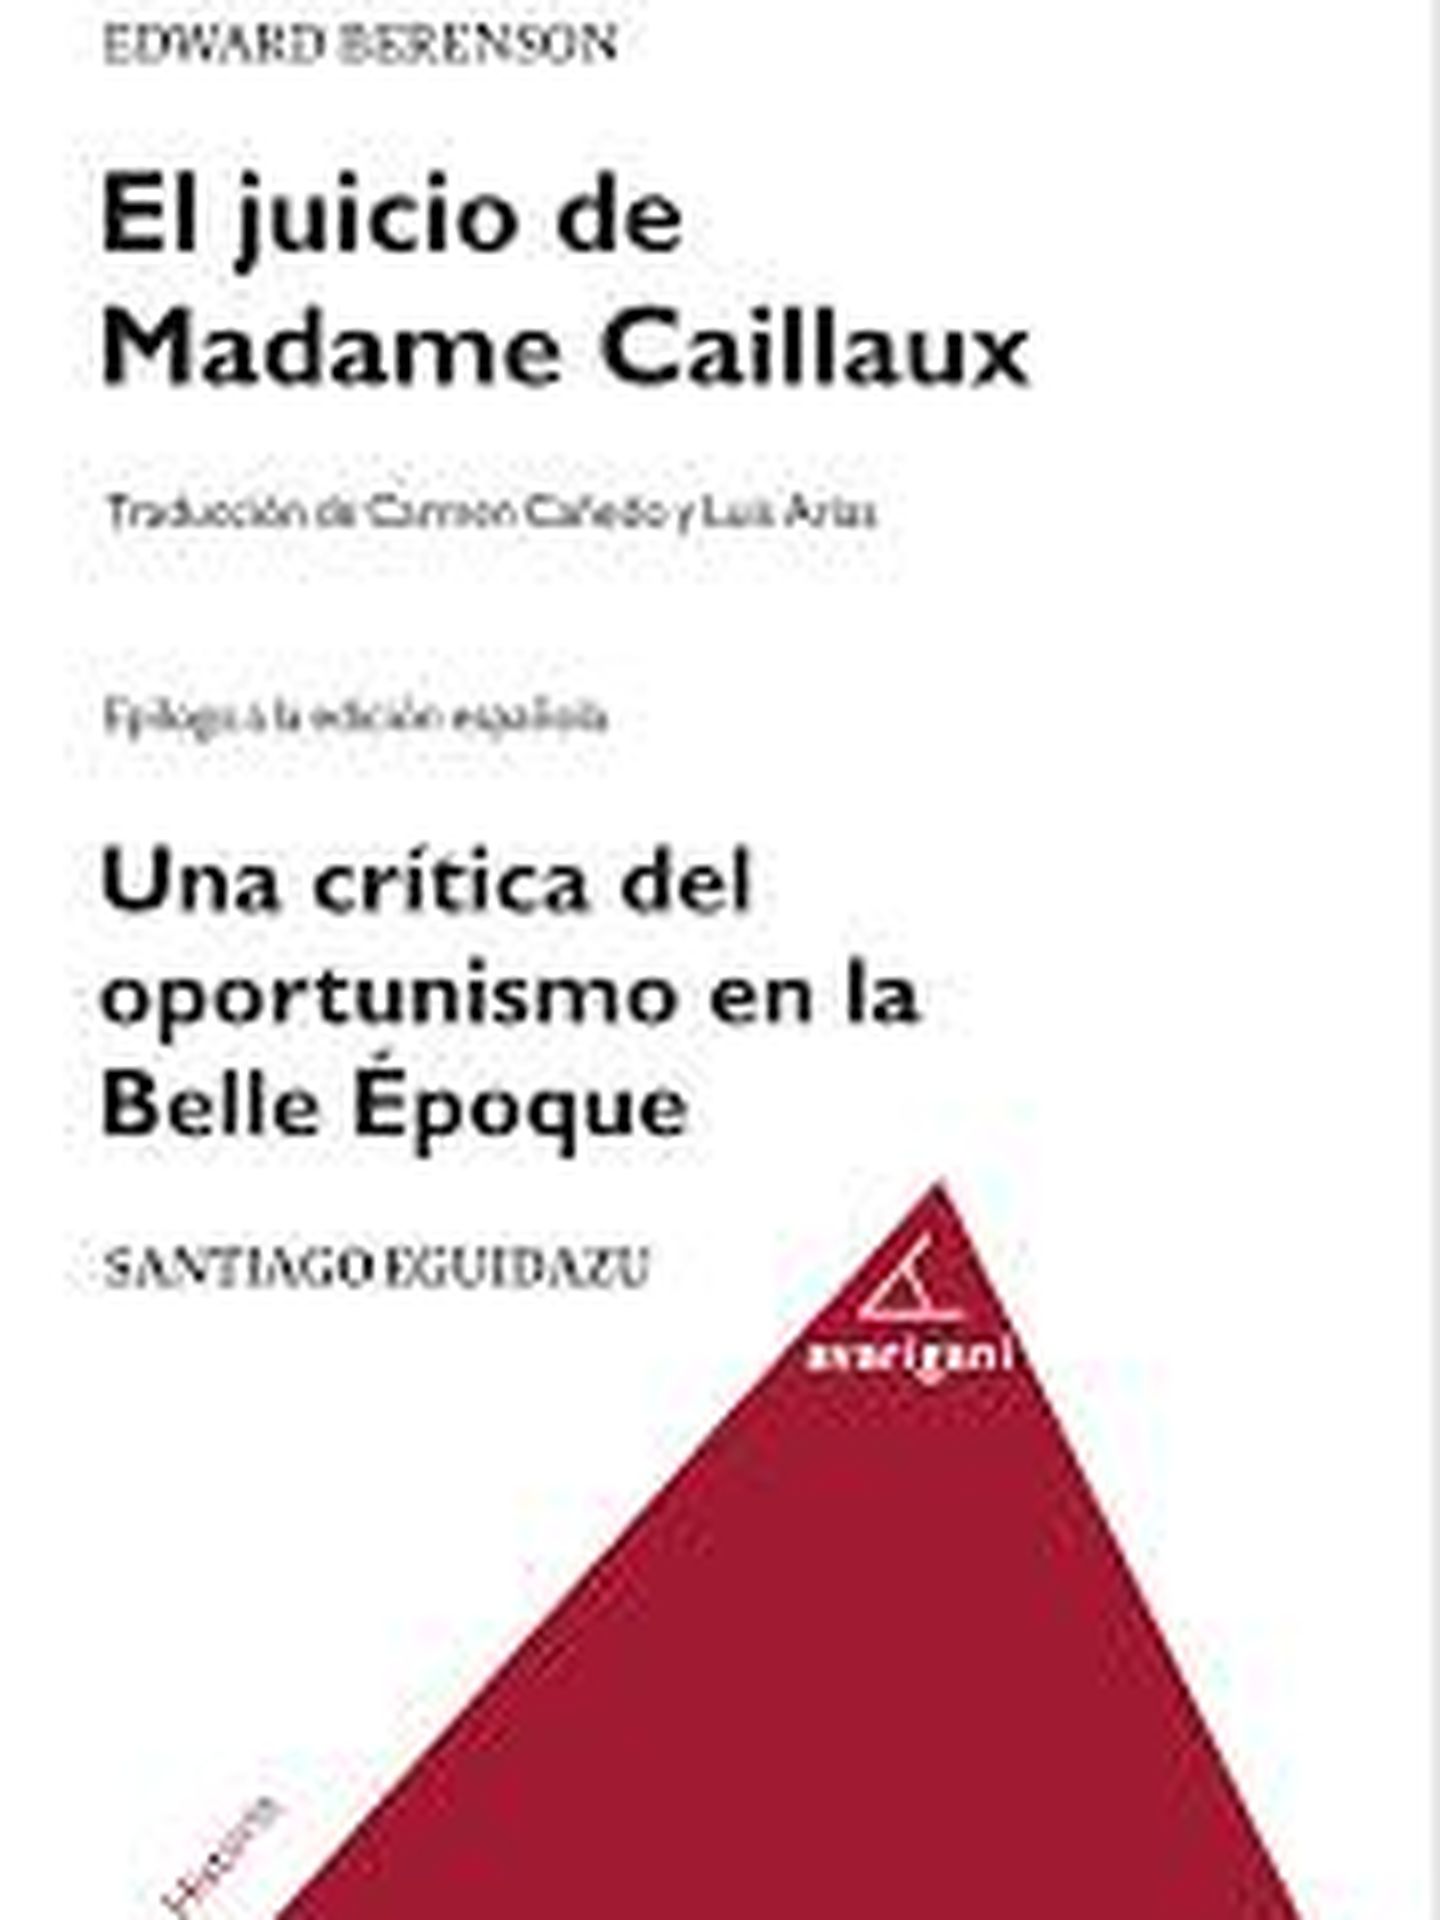 'El juicio de Madame Caillaux'